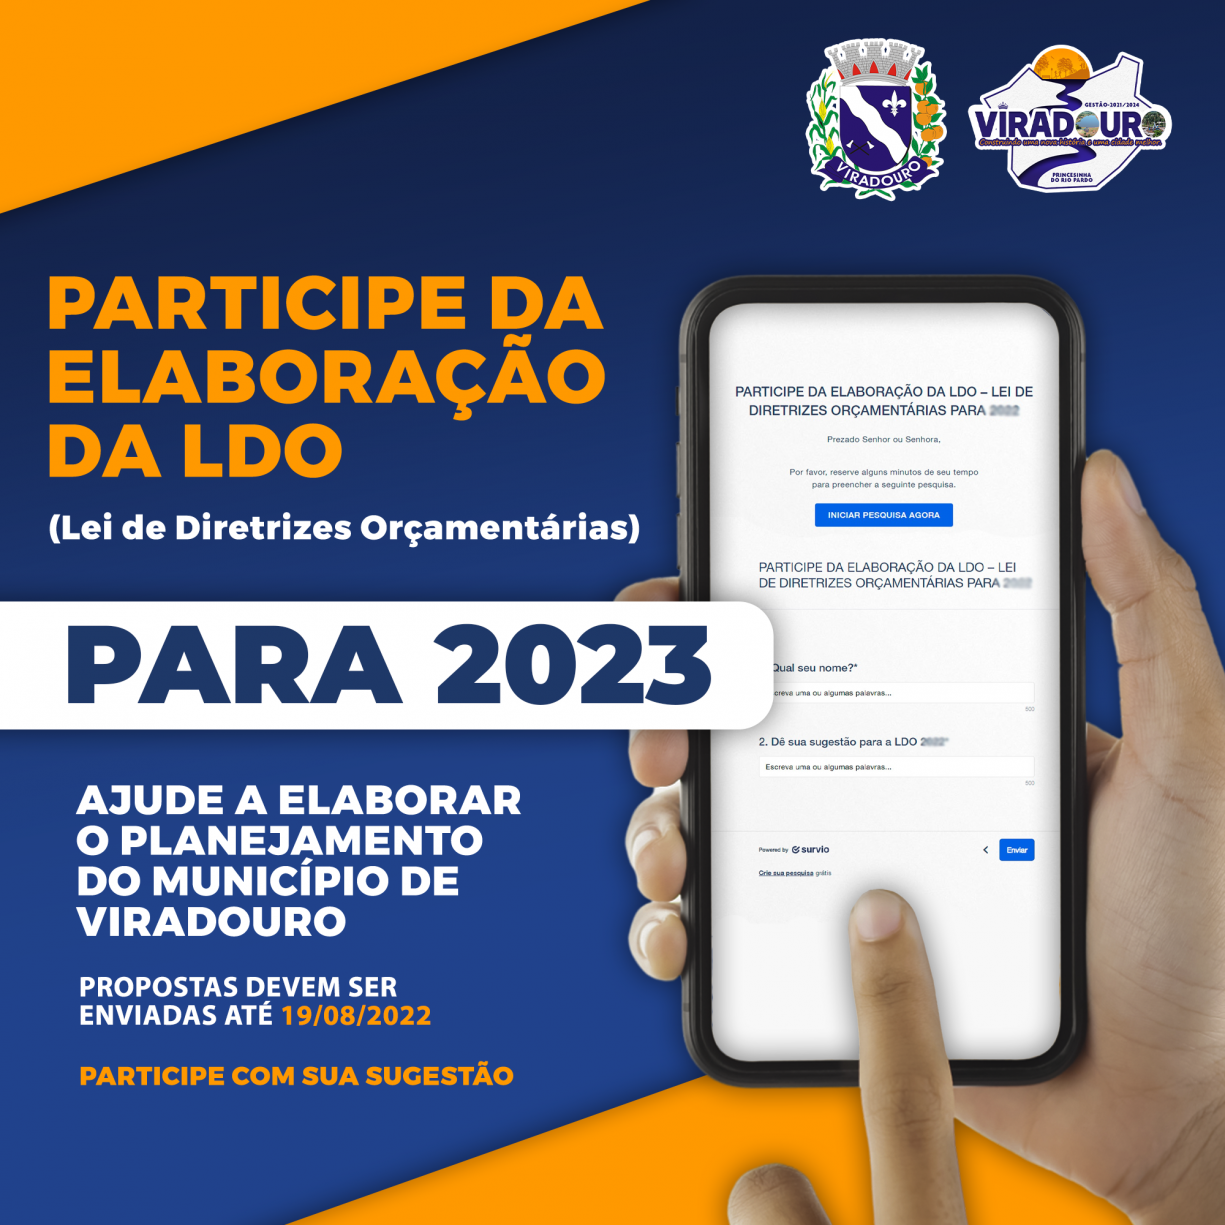 PARTICIPE DA ELABORAÇÃO DA LDO – LEI DE DIRETRIZES ORÇAMENTÁRIAS PARA 2023